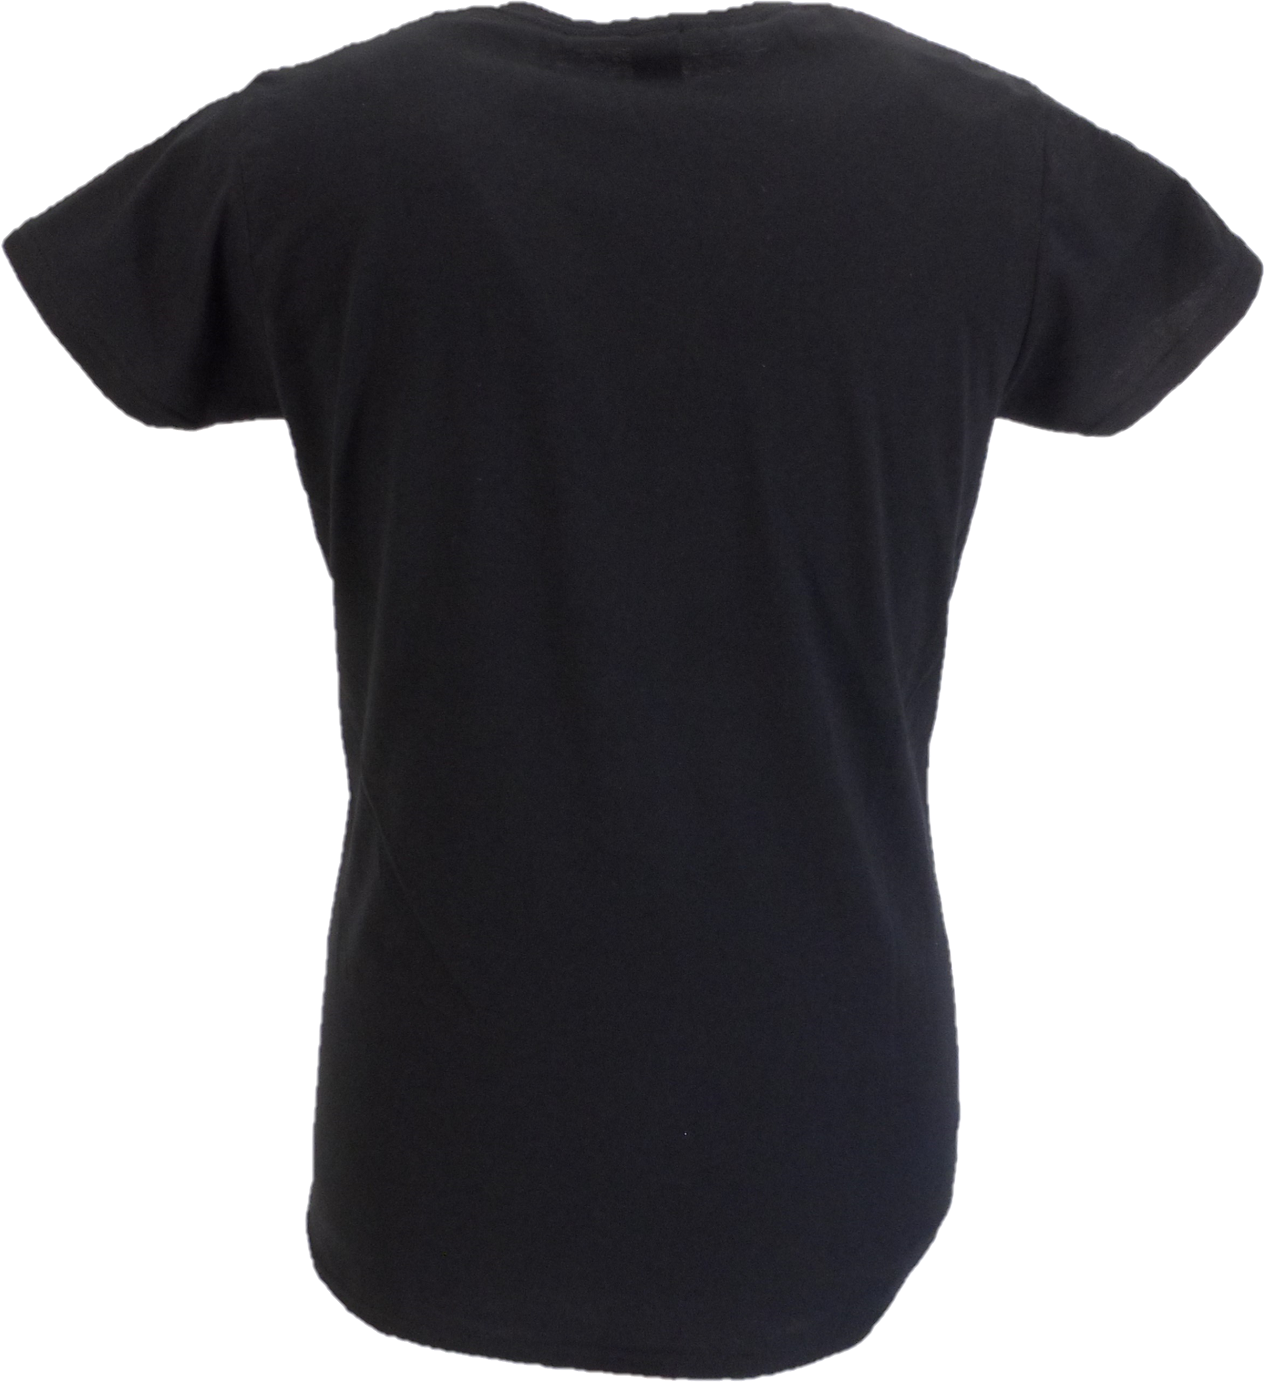 Offiziell lizenzierte Damen-T-Shirts mit The Selecter -Logo